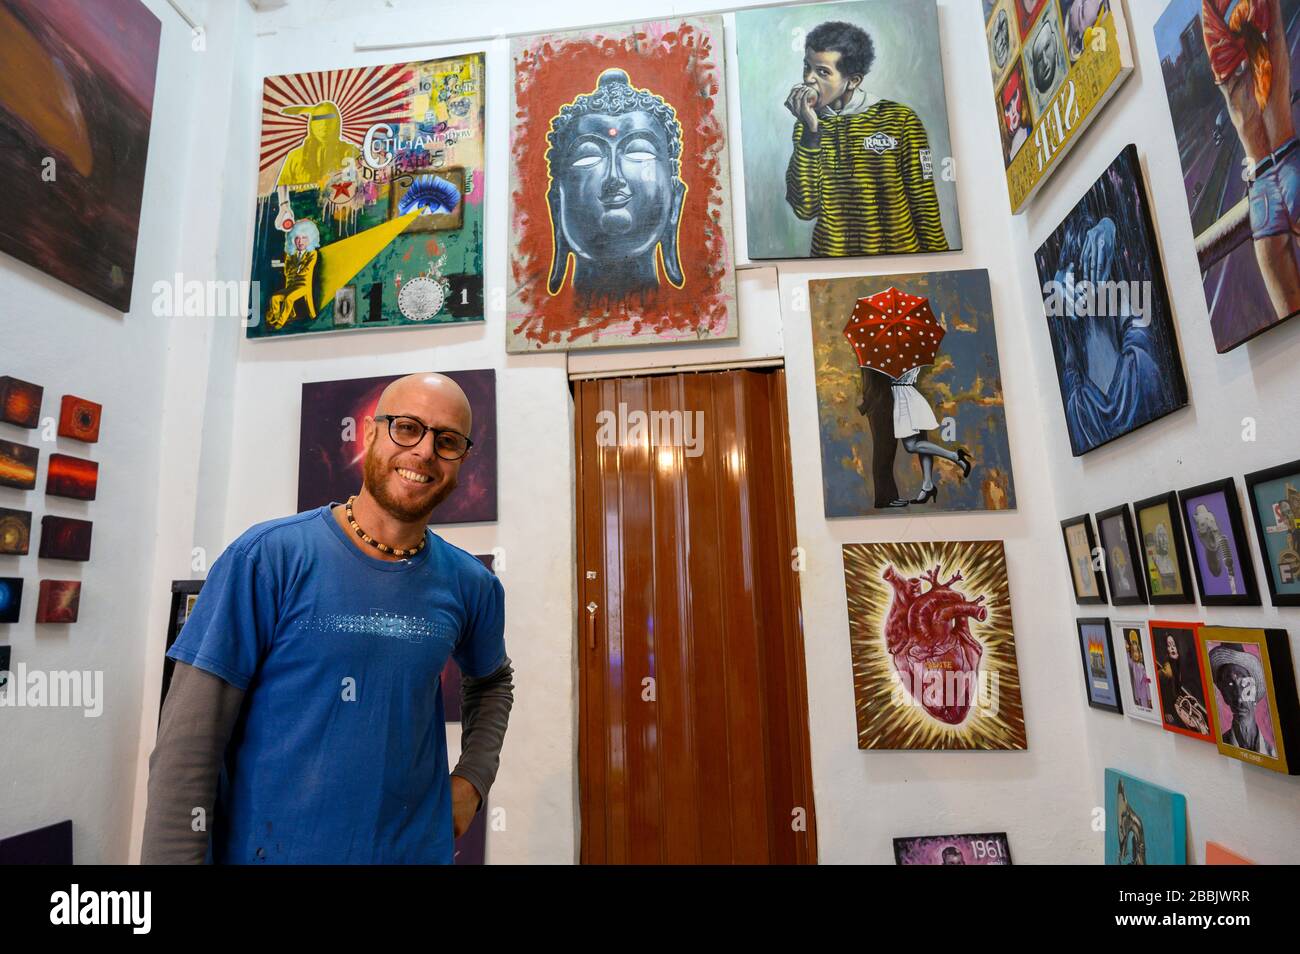 Artiste , la Havane Vieja, Cuba Banque D'Images